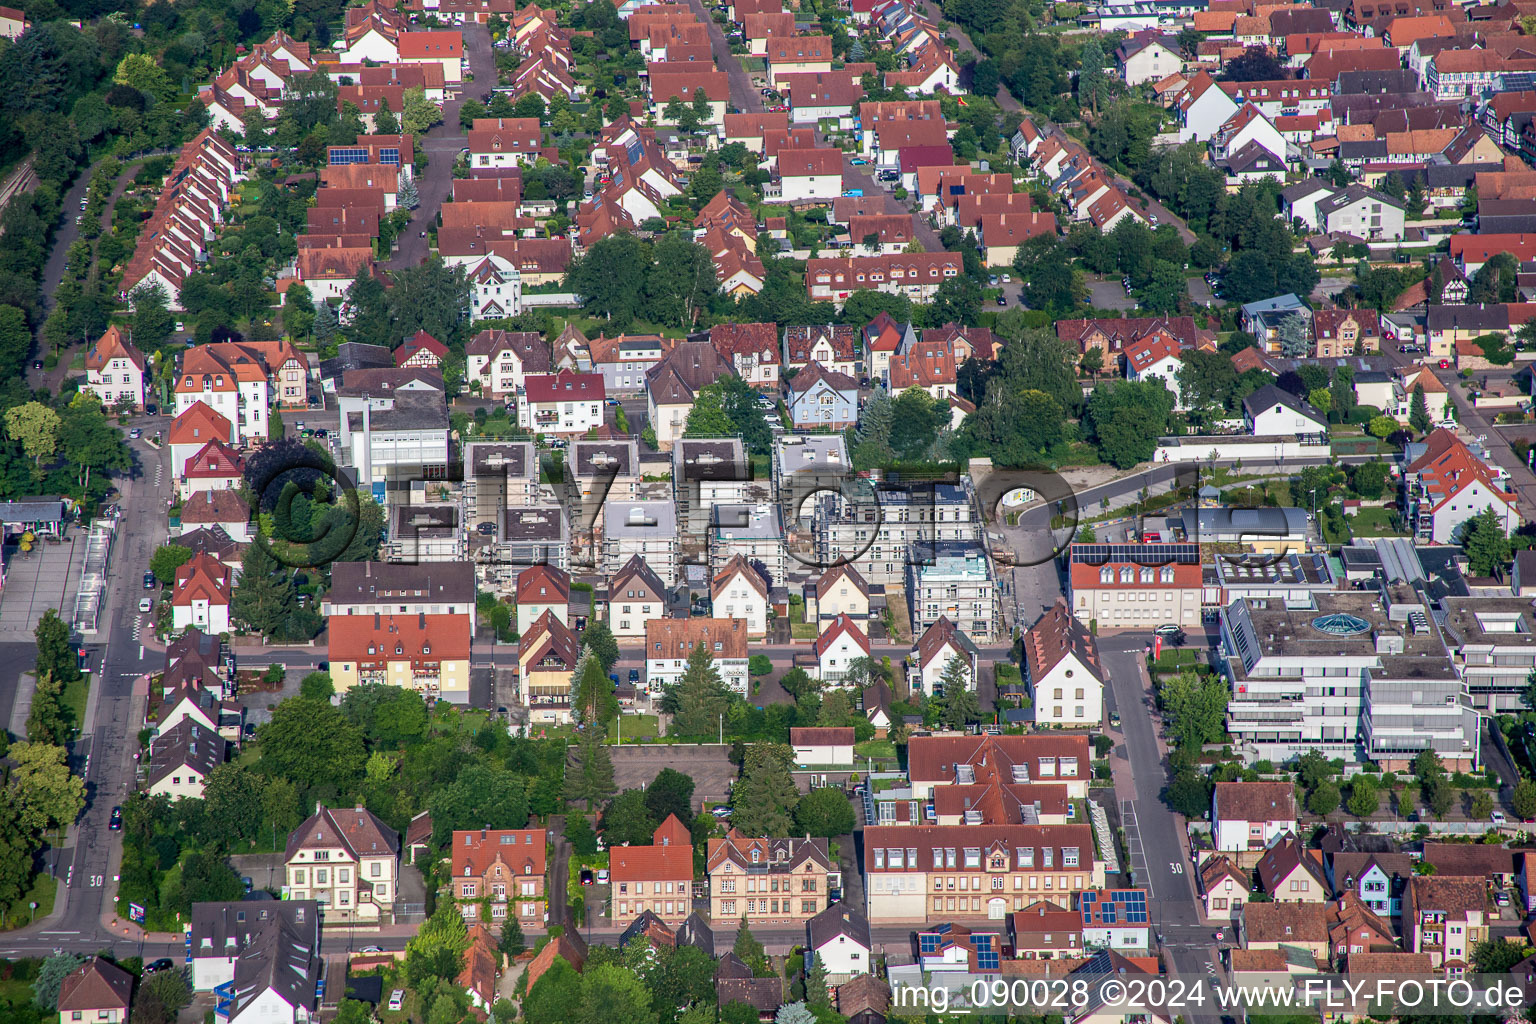 Gebäude- Ensemble- Baustellen zum Neubau eines Stadtquartiers 'Im Stadtkern' in Kandel im Bundesland Rheinland-Pfalz, Deutschland aus der Luft betrachtet